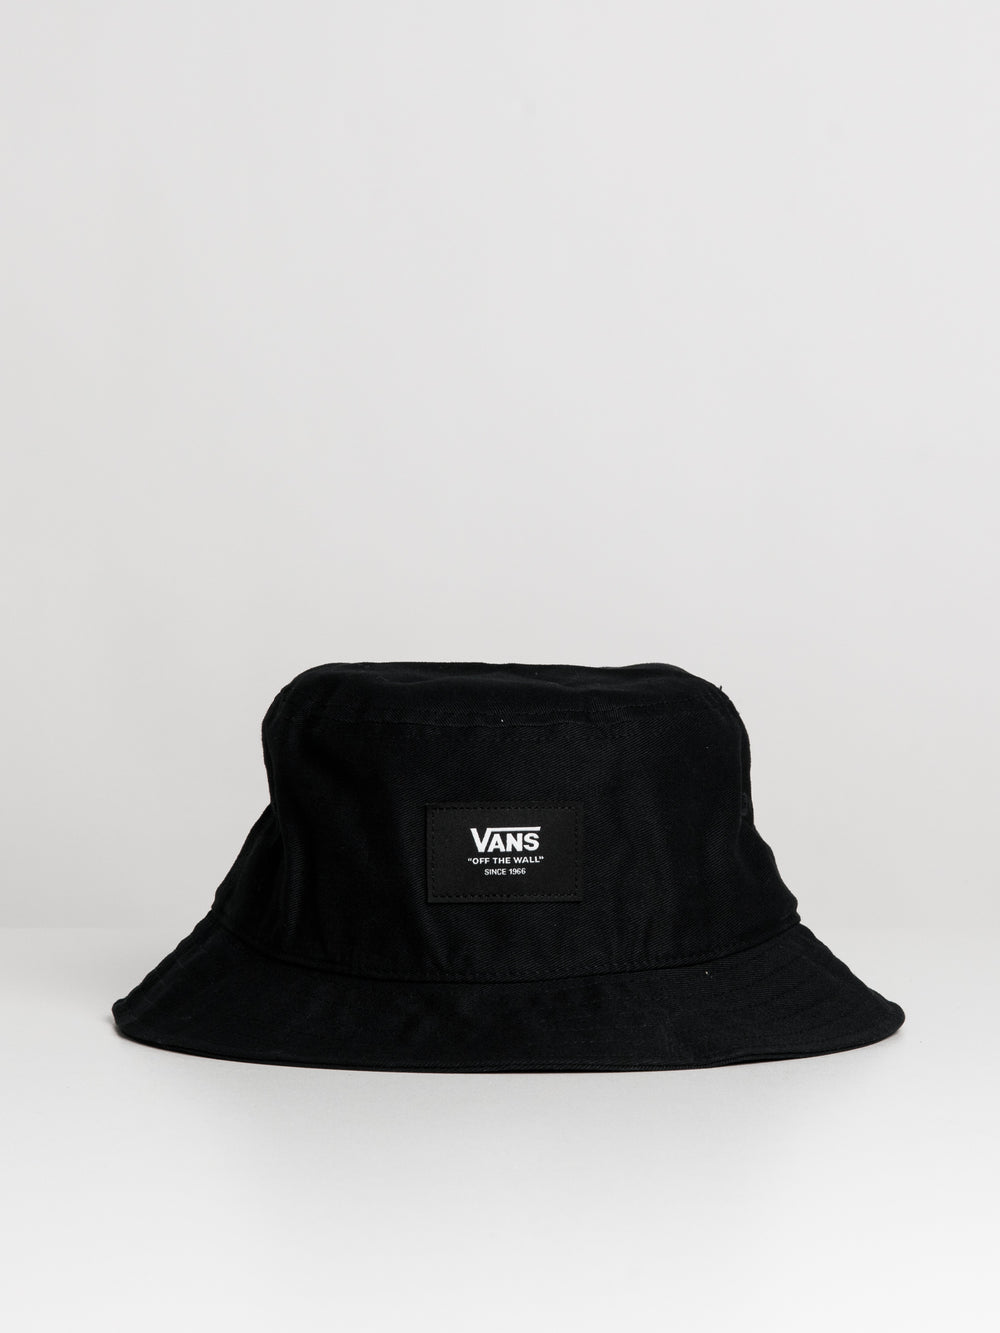 VANS Vans Patch Bucket Hat - Black - Clearance Black L/XL